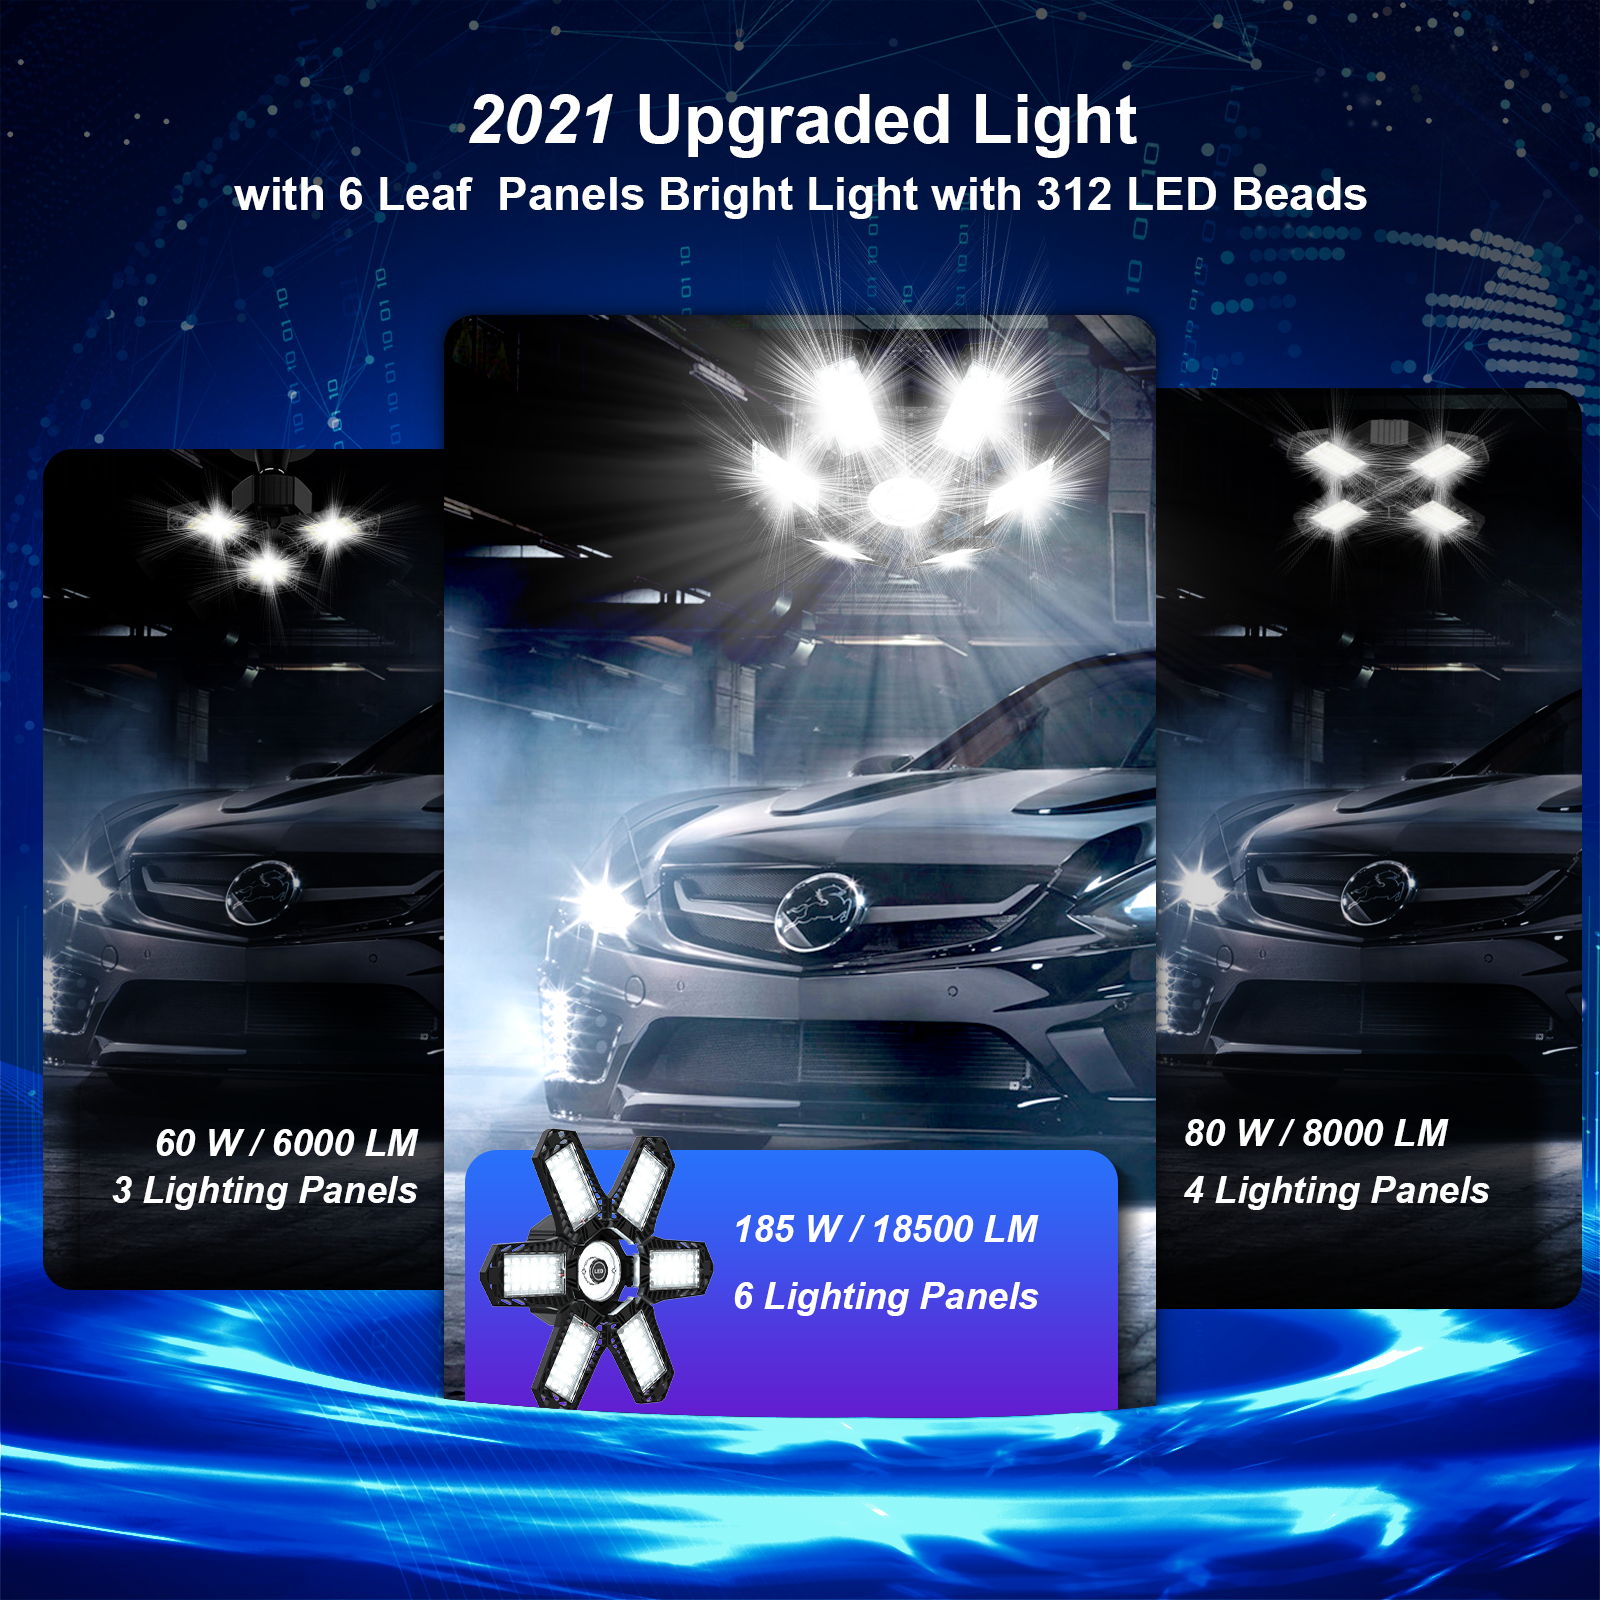 LED Garage Lights, 185W Deformable LED Garage Ceiling Lights with Adjustable  Panels, E26 E27 LED Lights for Garage